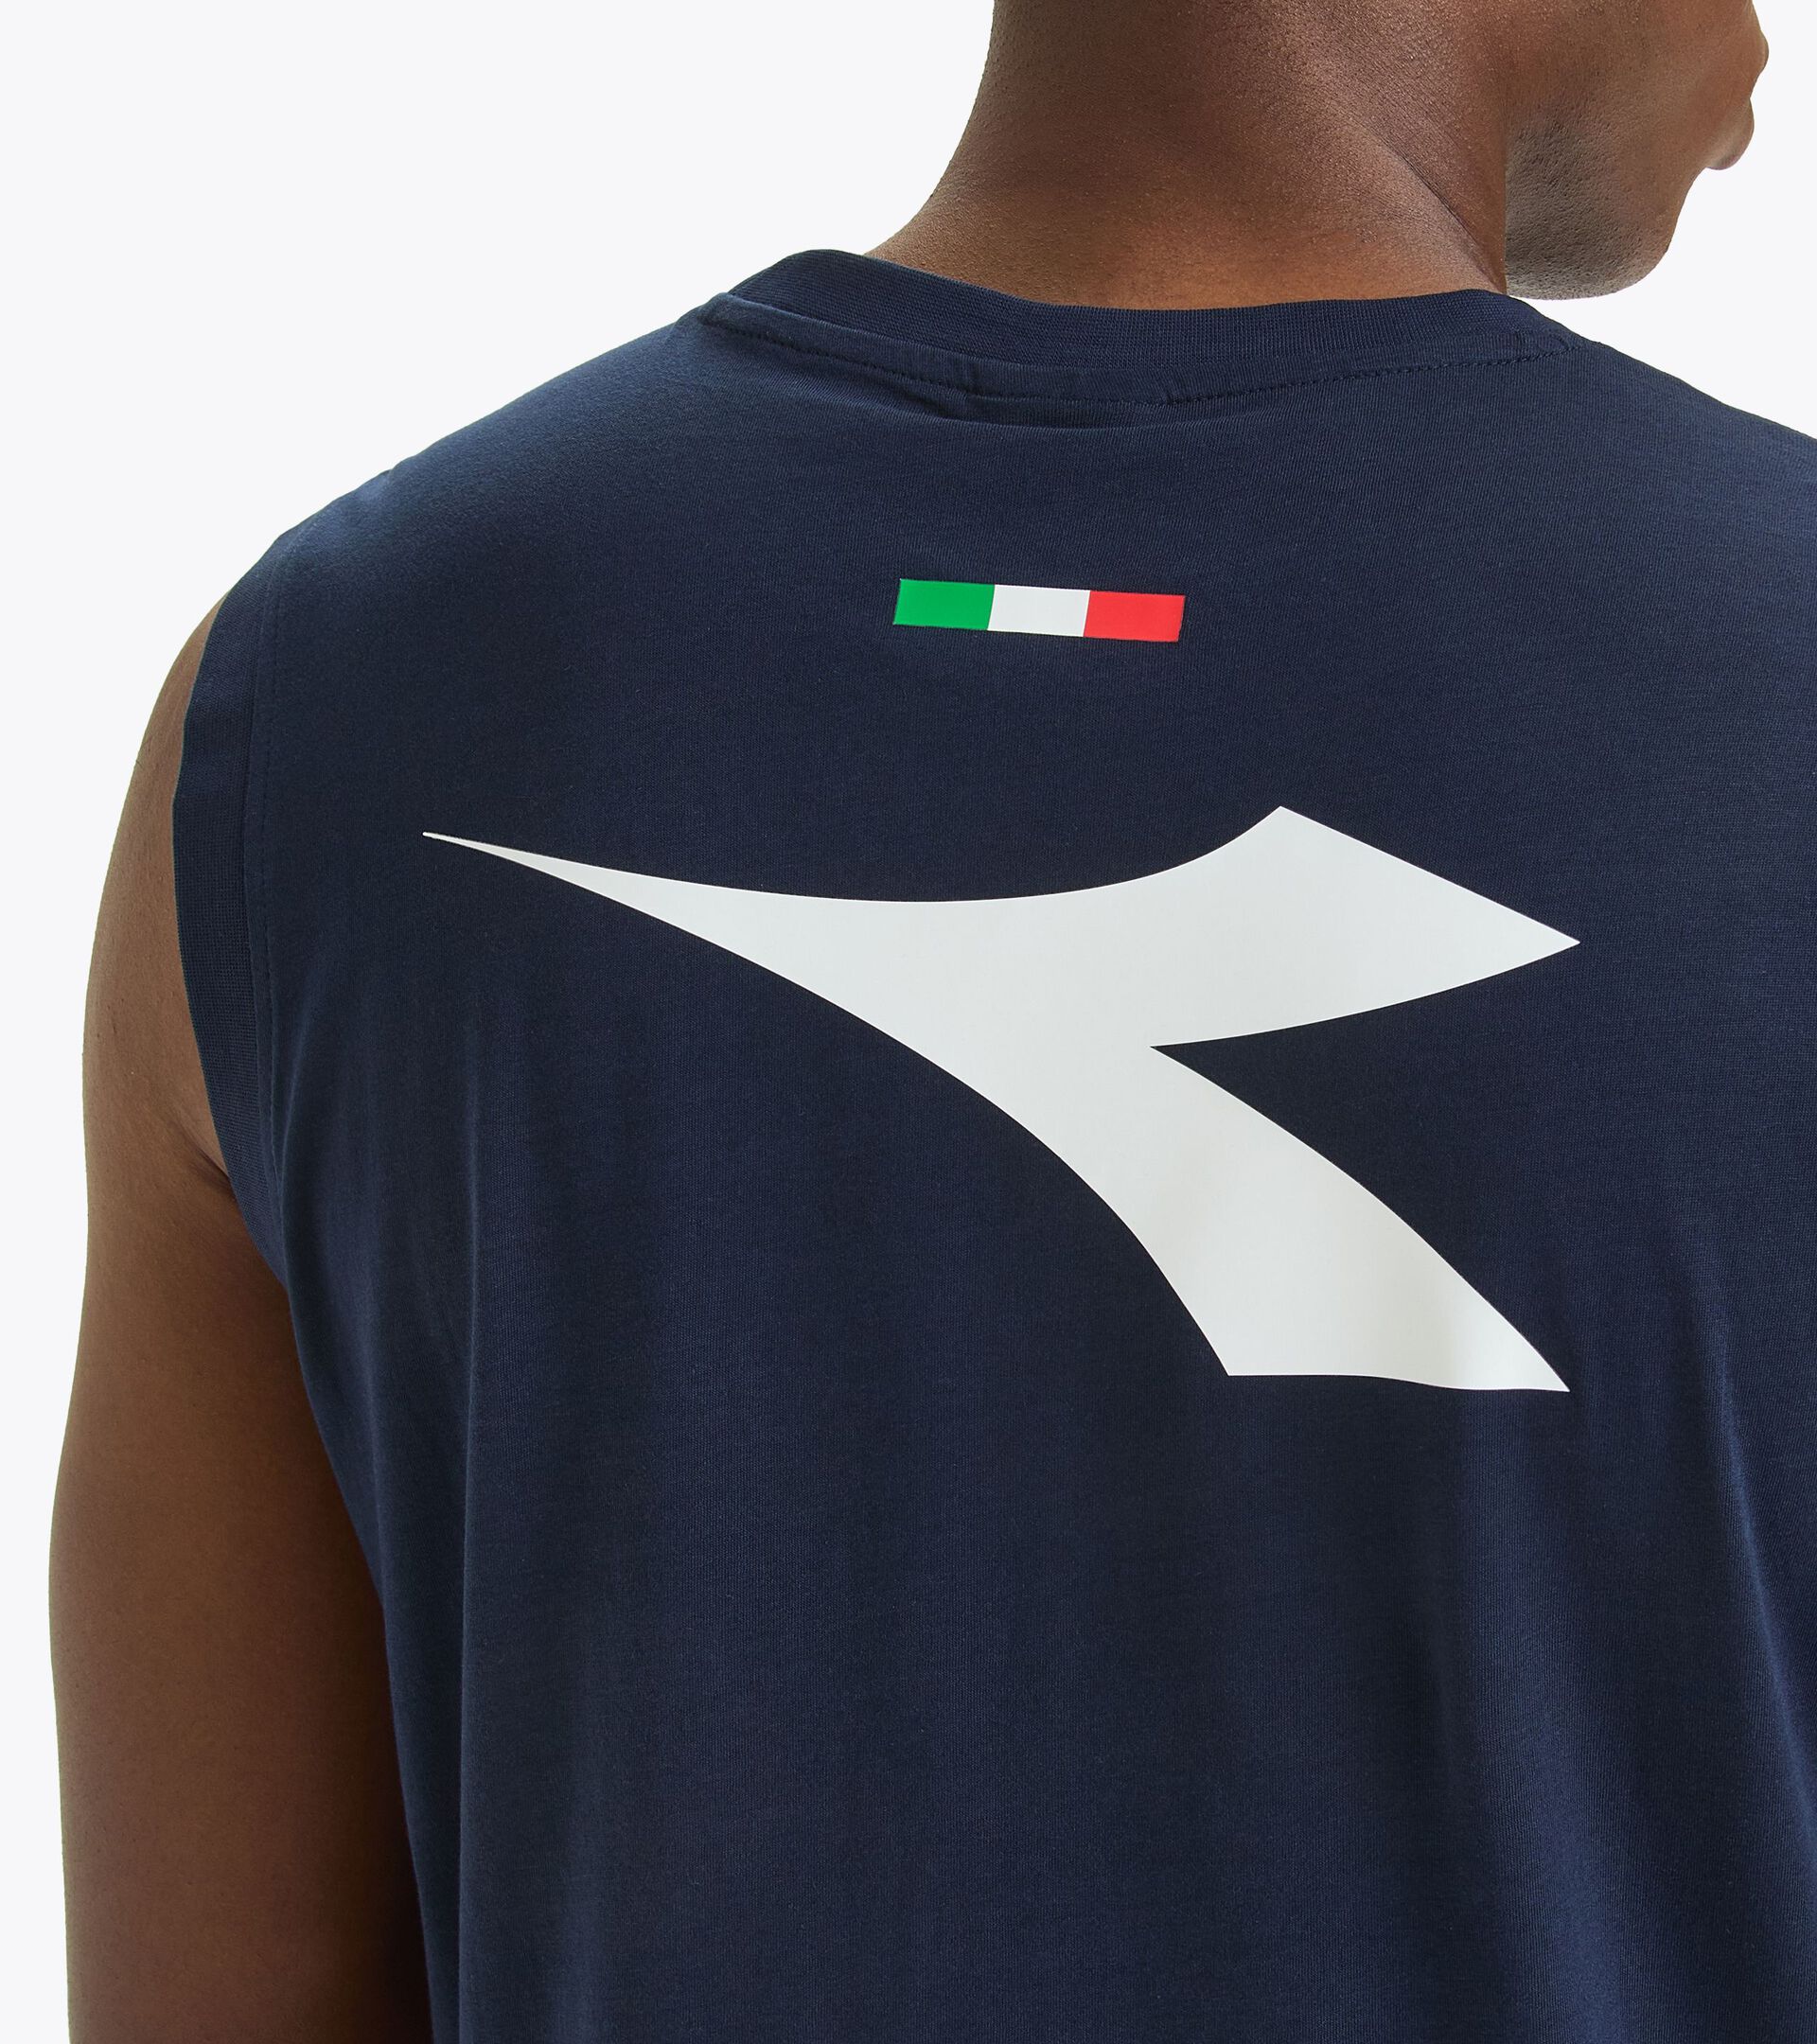 Camiseta sin mangas para hombre - Selección Italiana de Vóley Playa SLEEVELESS ALLENAMENTO UOMO BV24 ITALIA AZUL CHAQUETON - Diadora